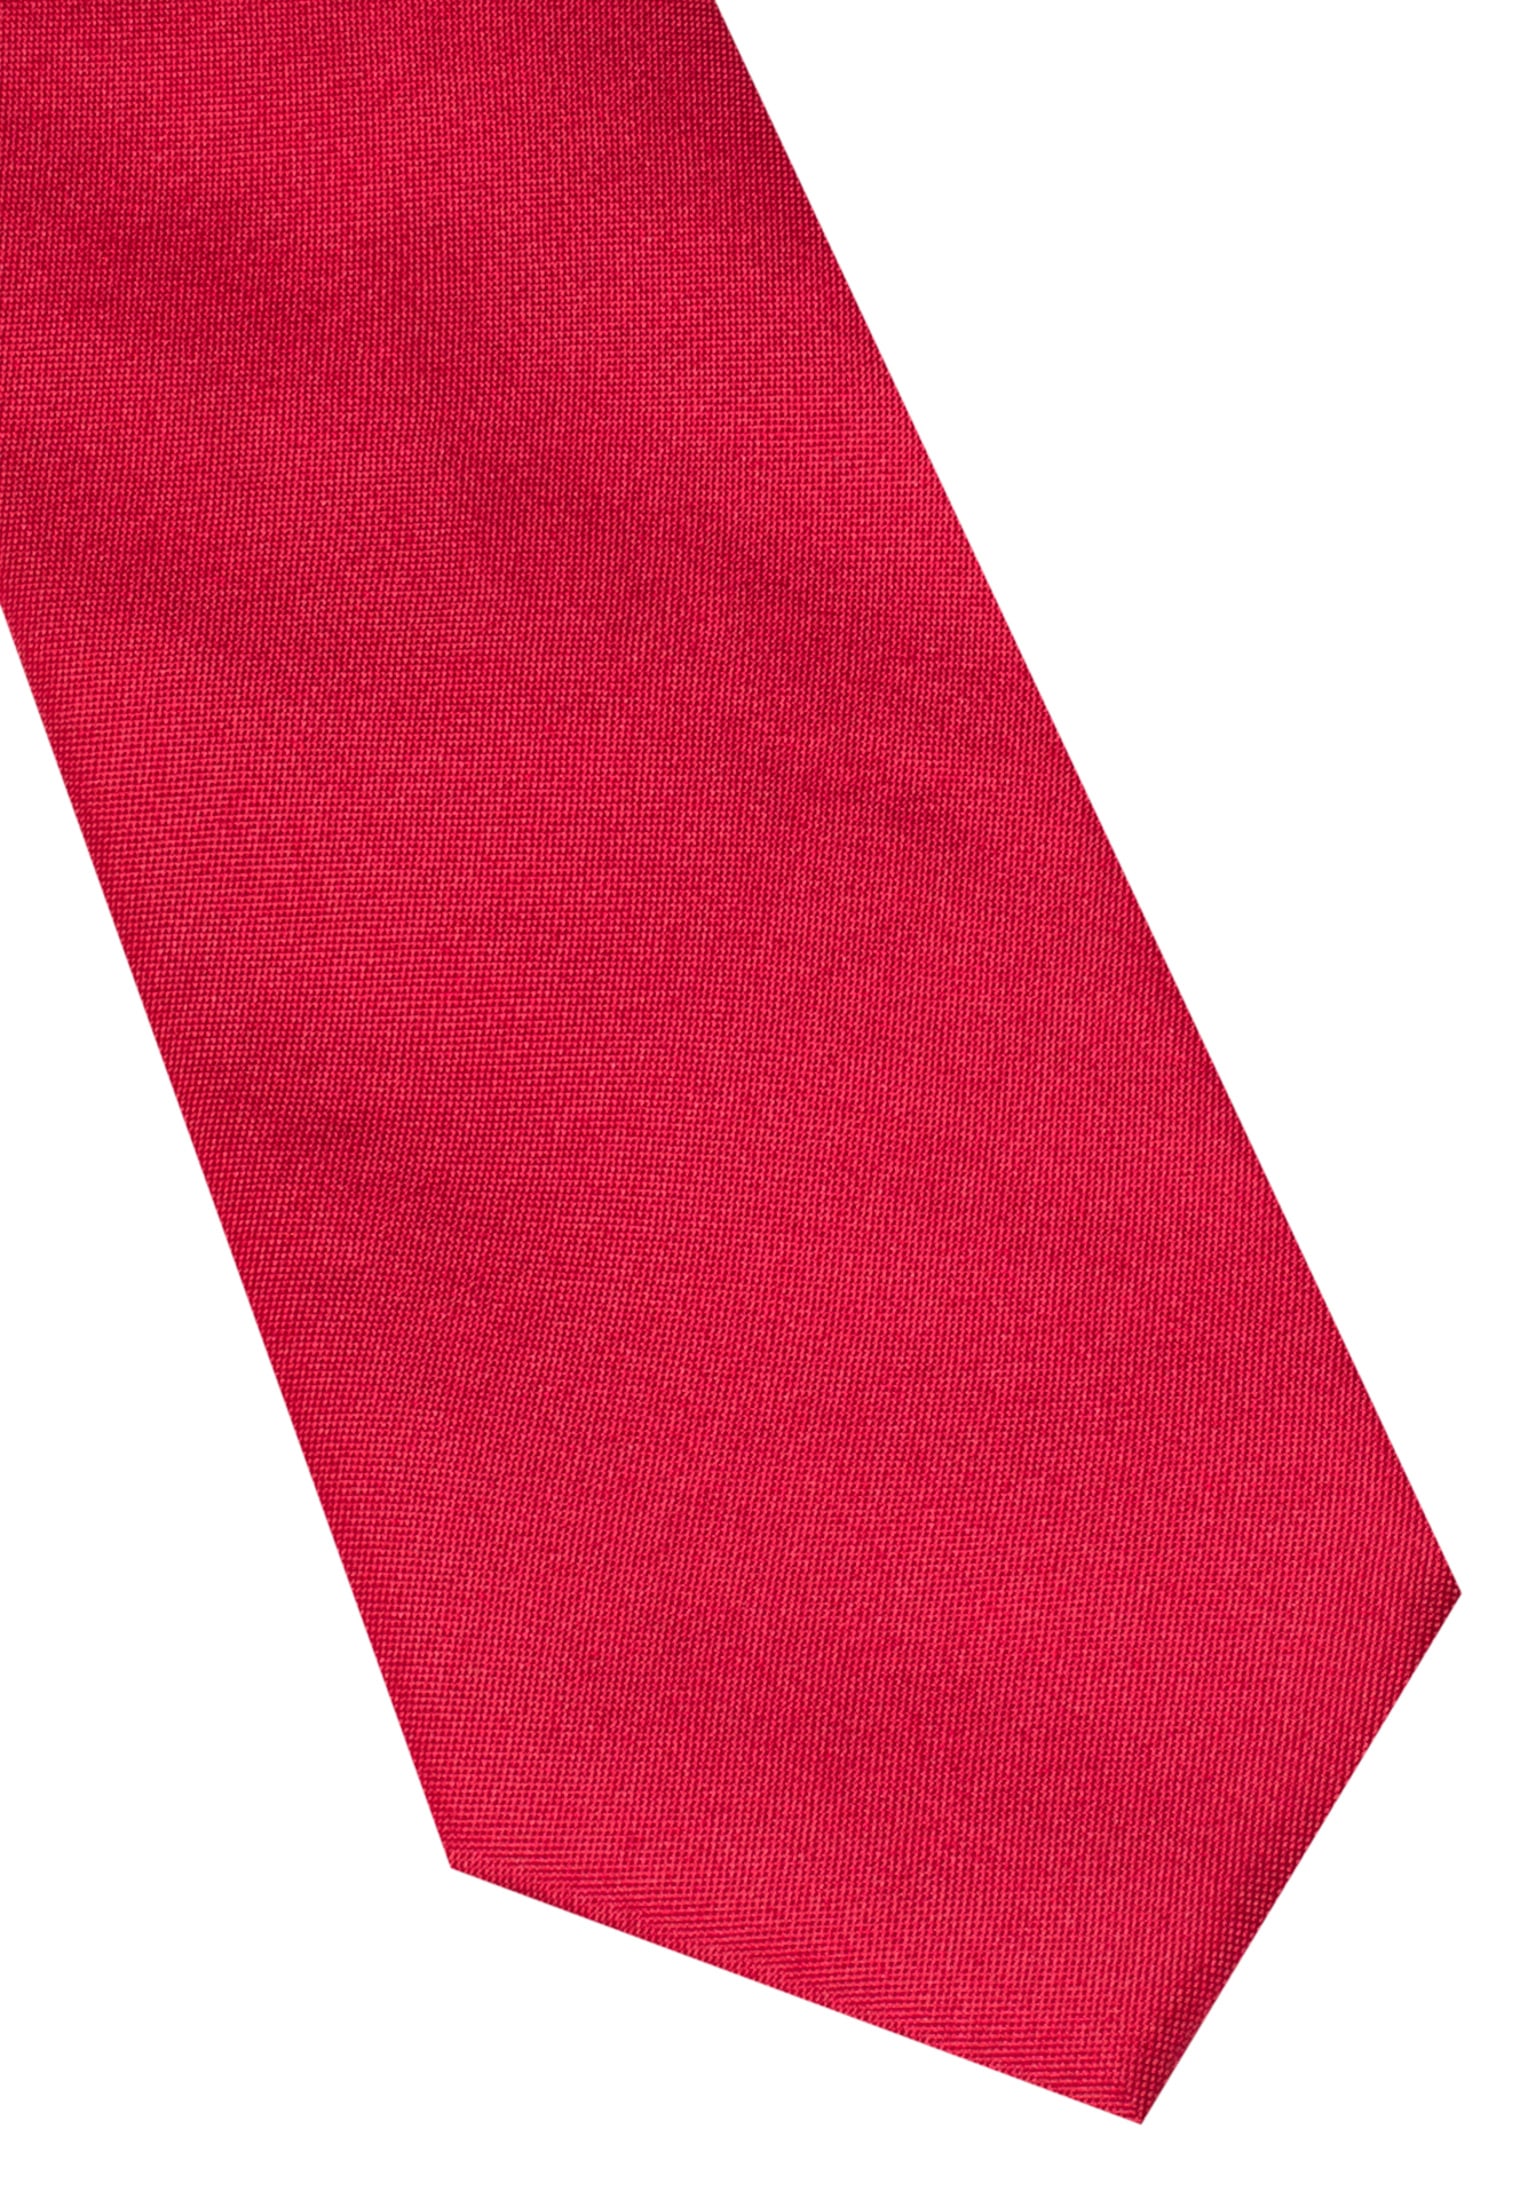 Cravate rouge uni